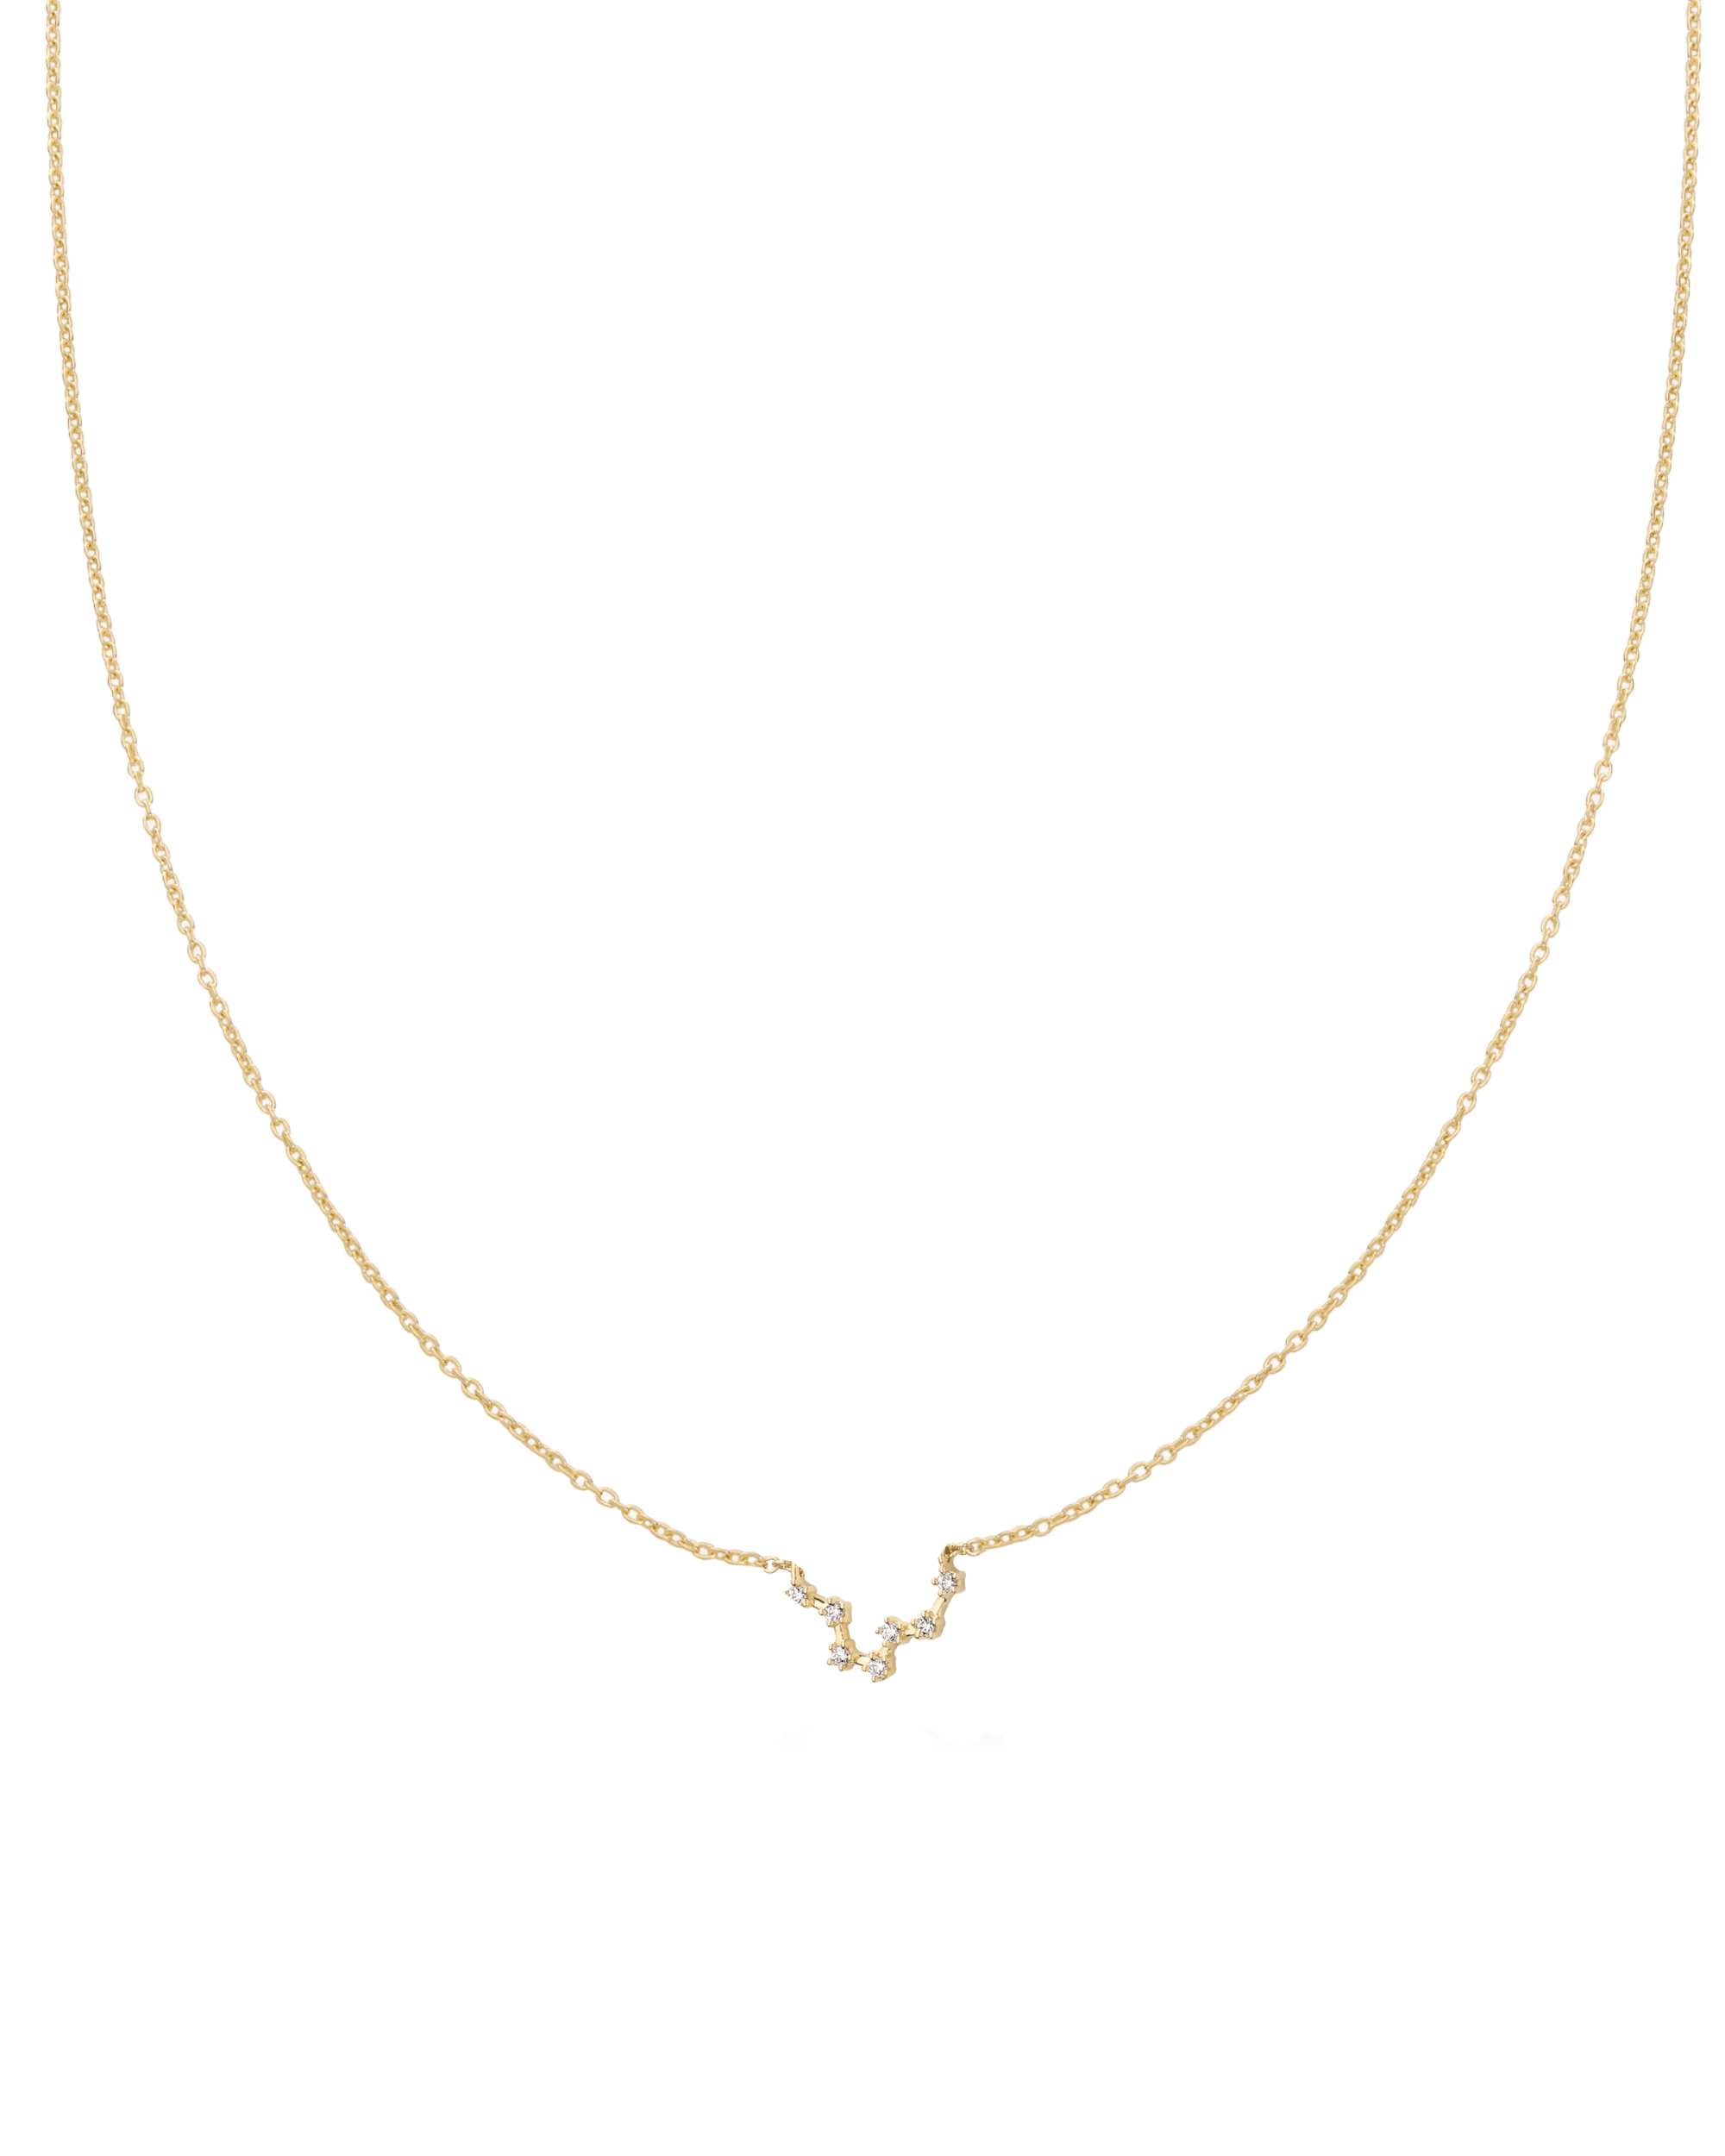 Pisces Constellation Necklace - 18K Gold Vermeil Necklaces magal-dev 16" 